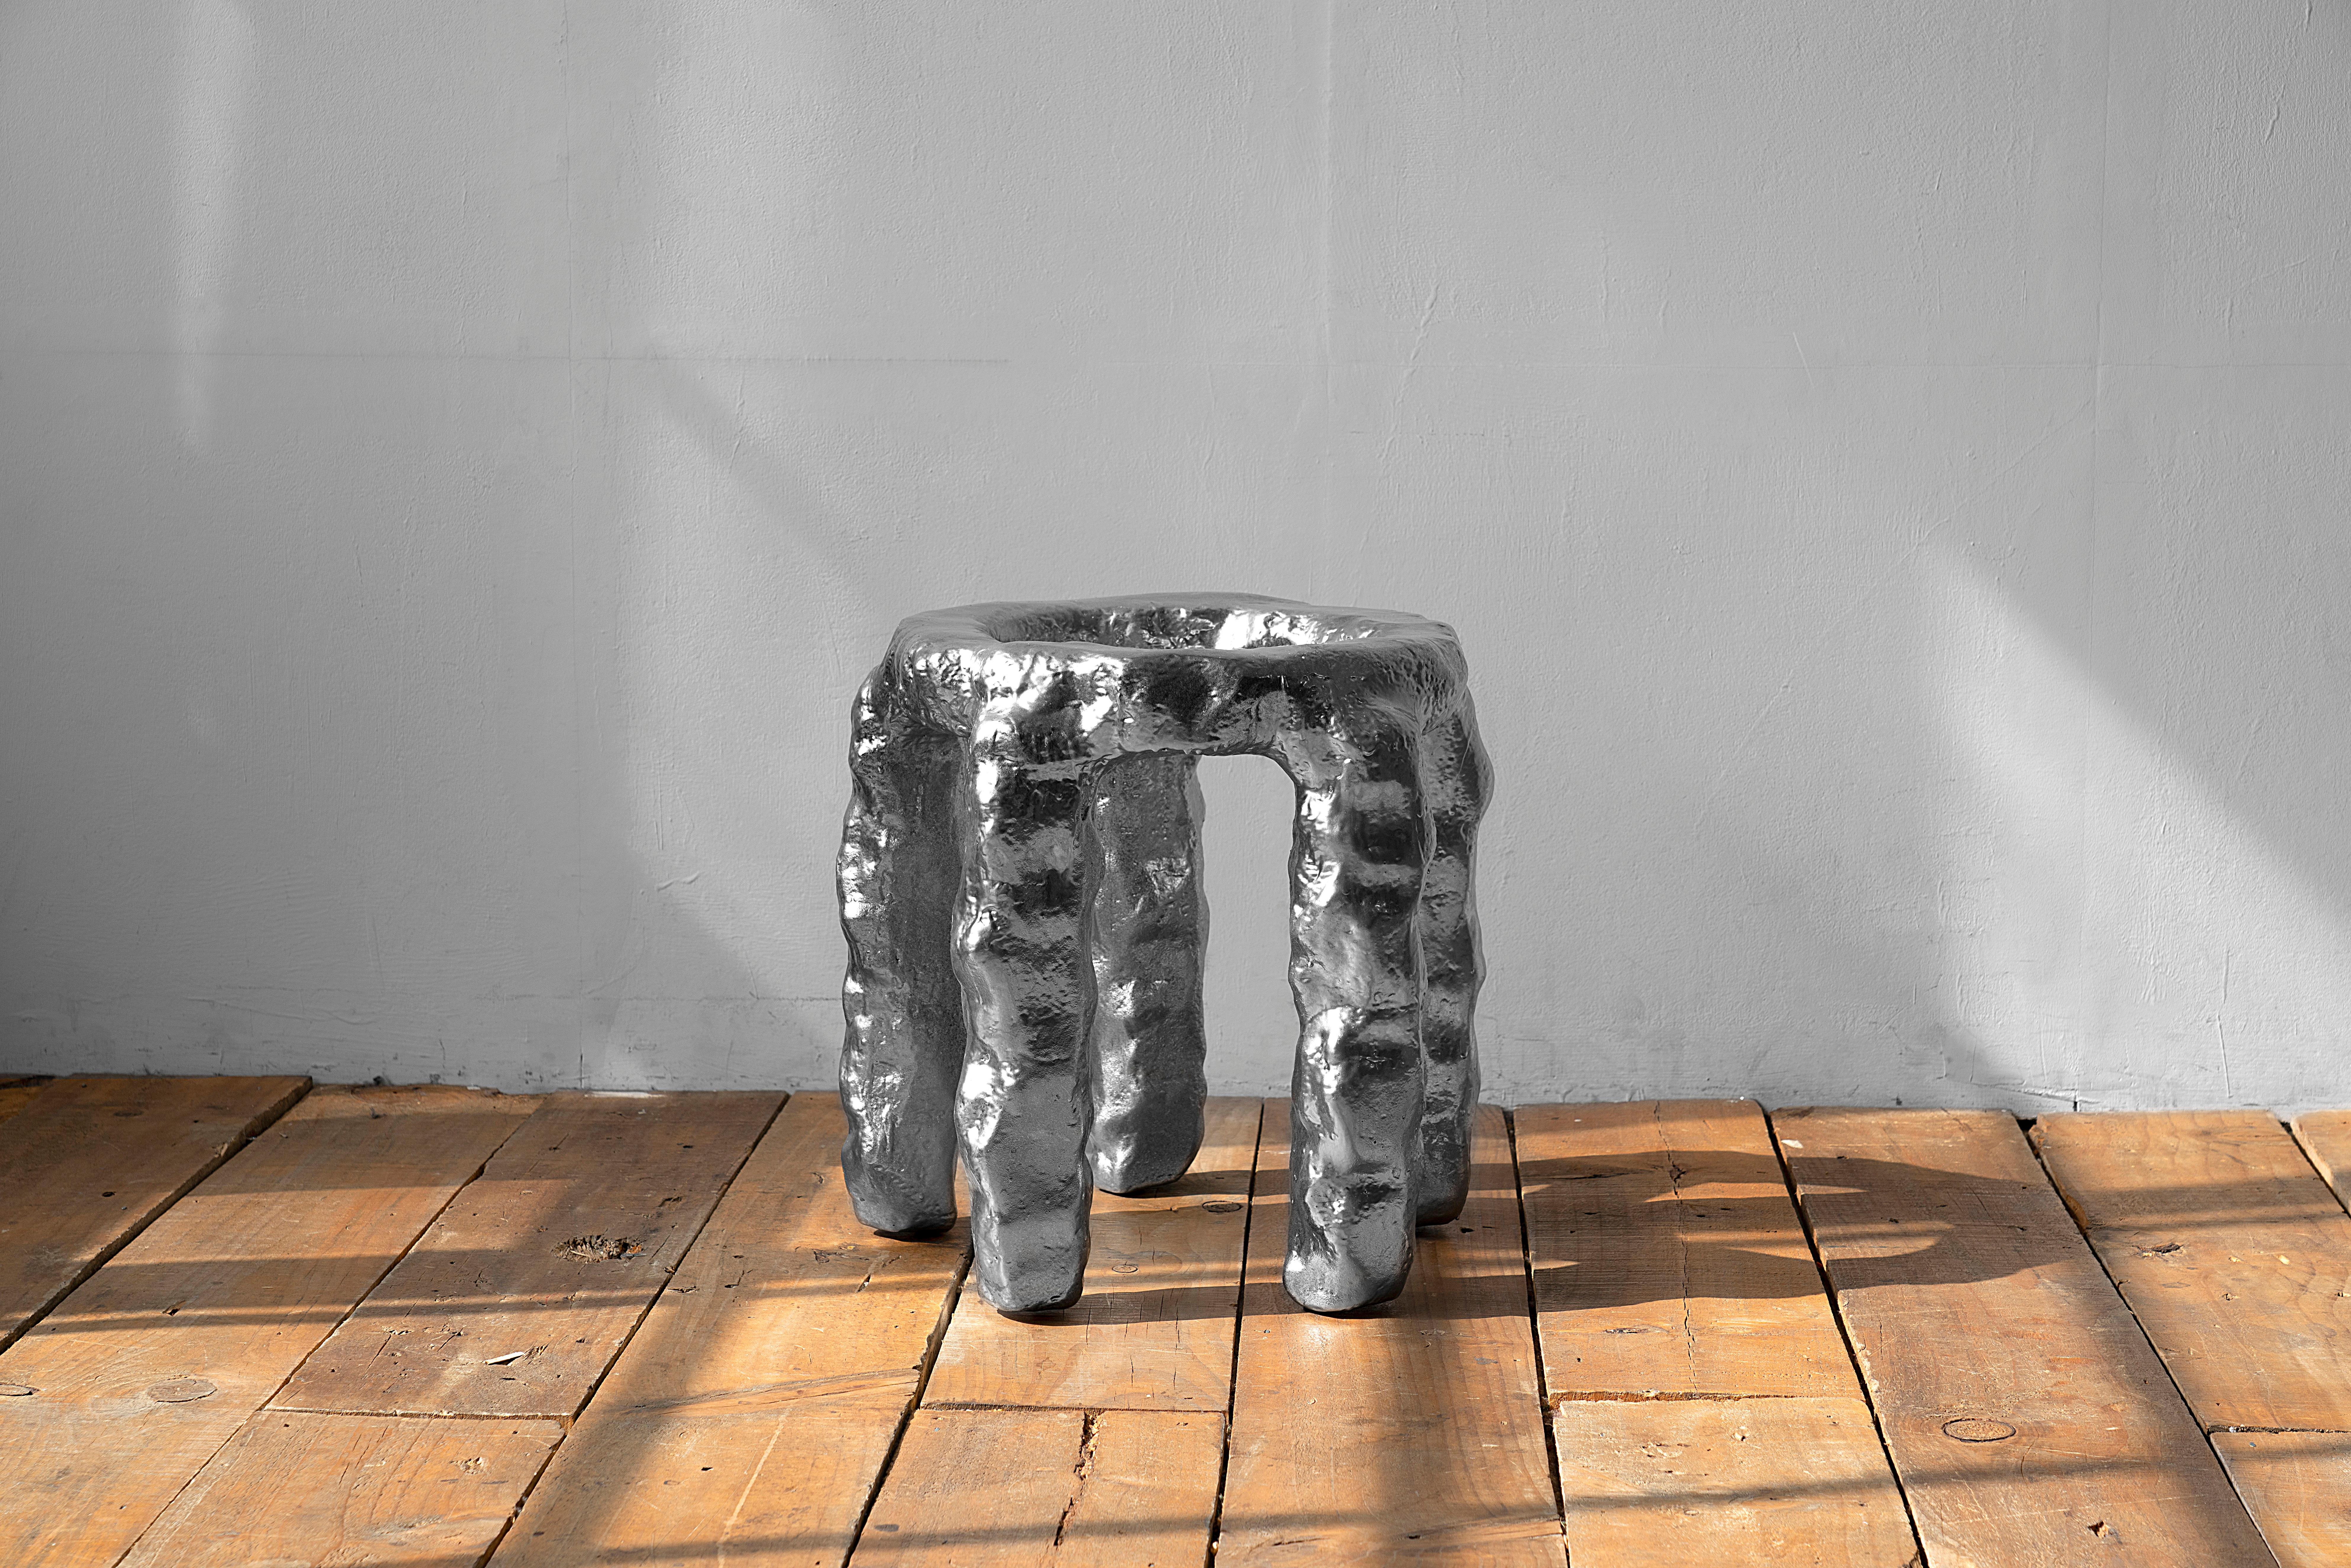 Skulpturaler Beistelltisch von Dongwook Choi
Serien Crest und Trough
Abmessungen: B 42 x T 40 x H 45 cm
MATERIALIEN: Urethanbeschichtetes EPS, Silberbeschichtet

Je nach Zustand der Oberfläche kann es zu optischen Unterschieden in der Farbe